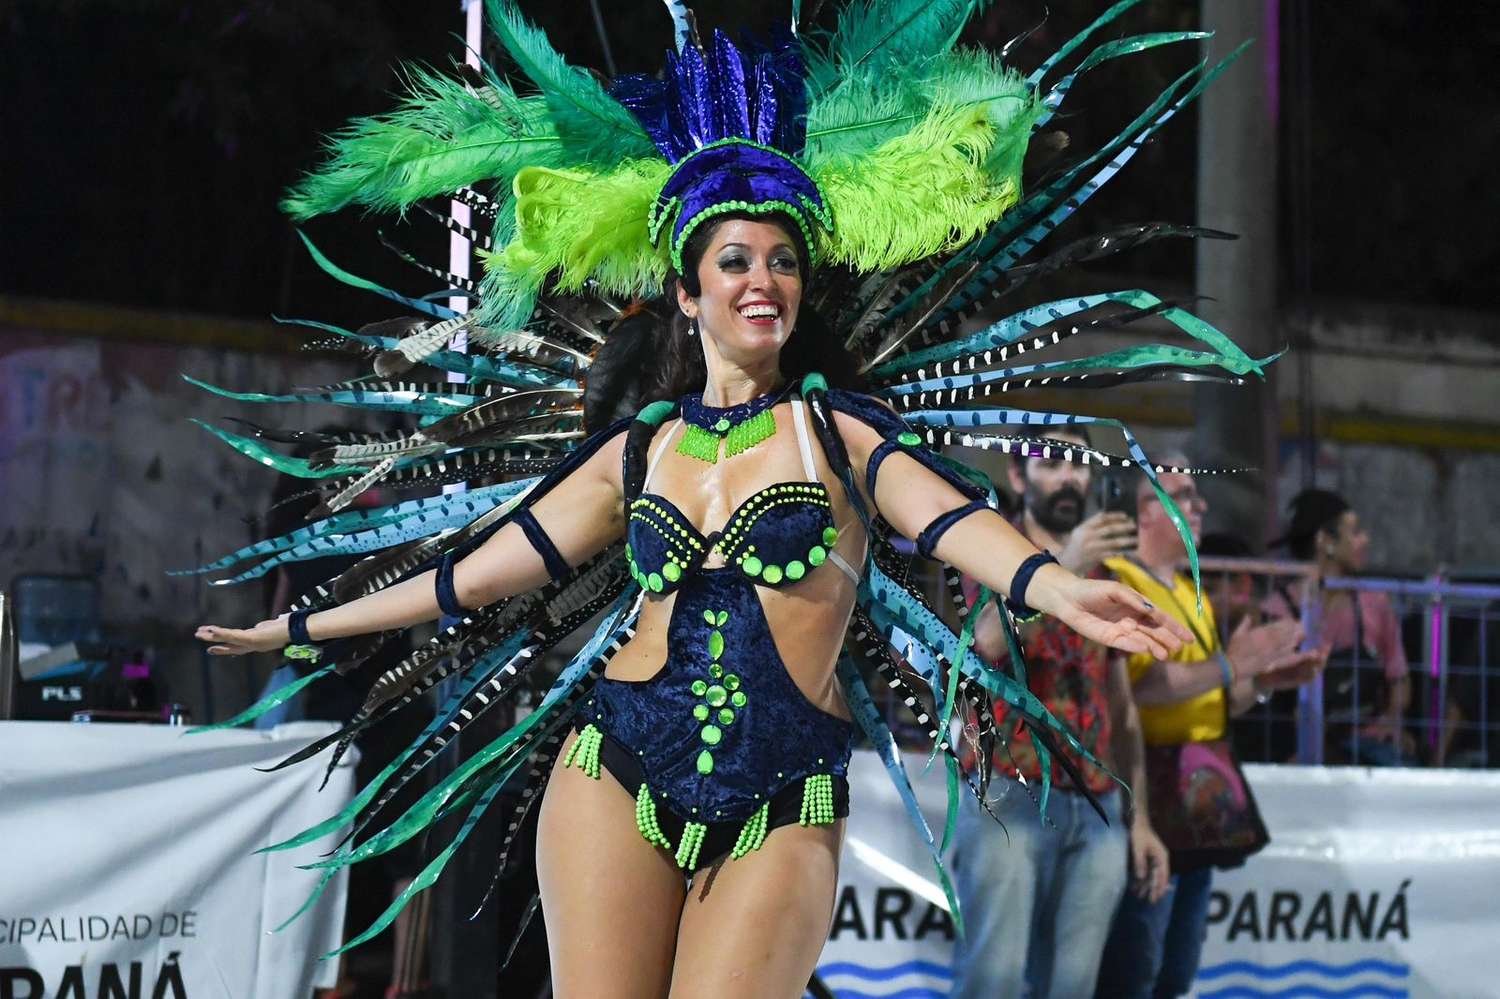 Paranaenses vivieron la primera noche de los carnavales oficiales 2024